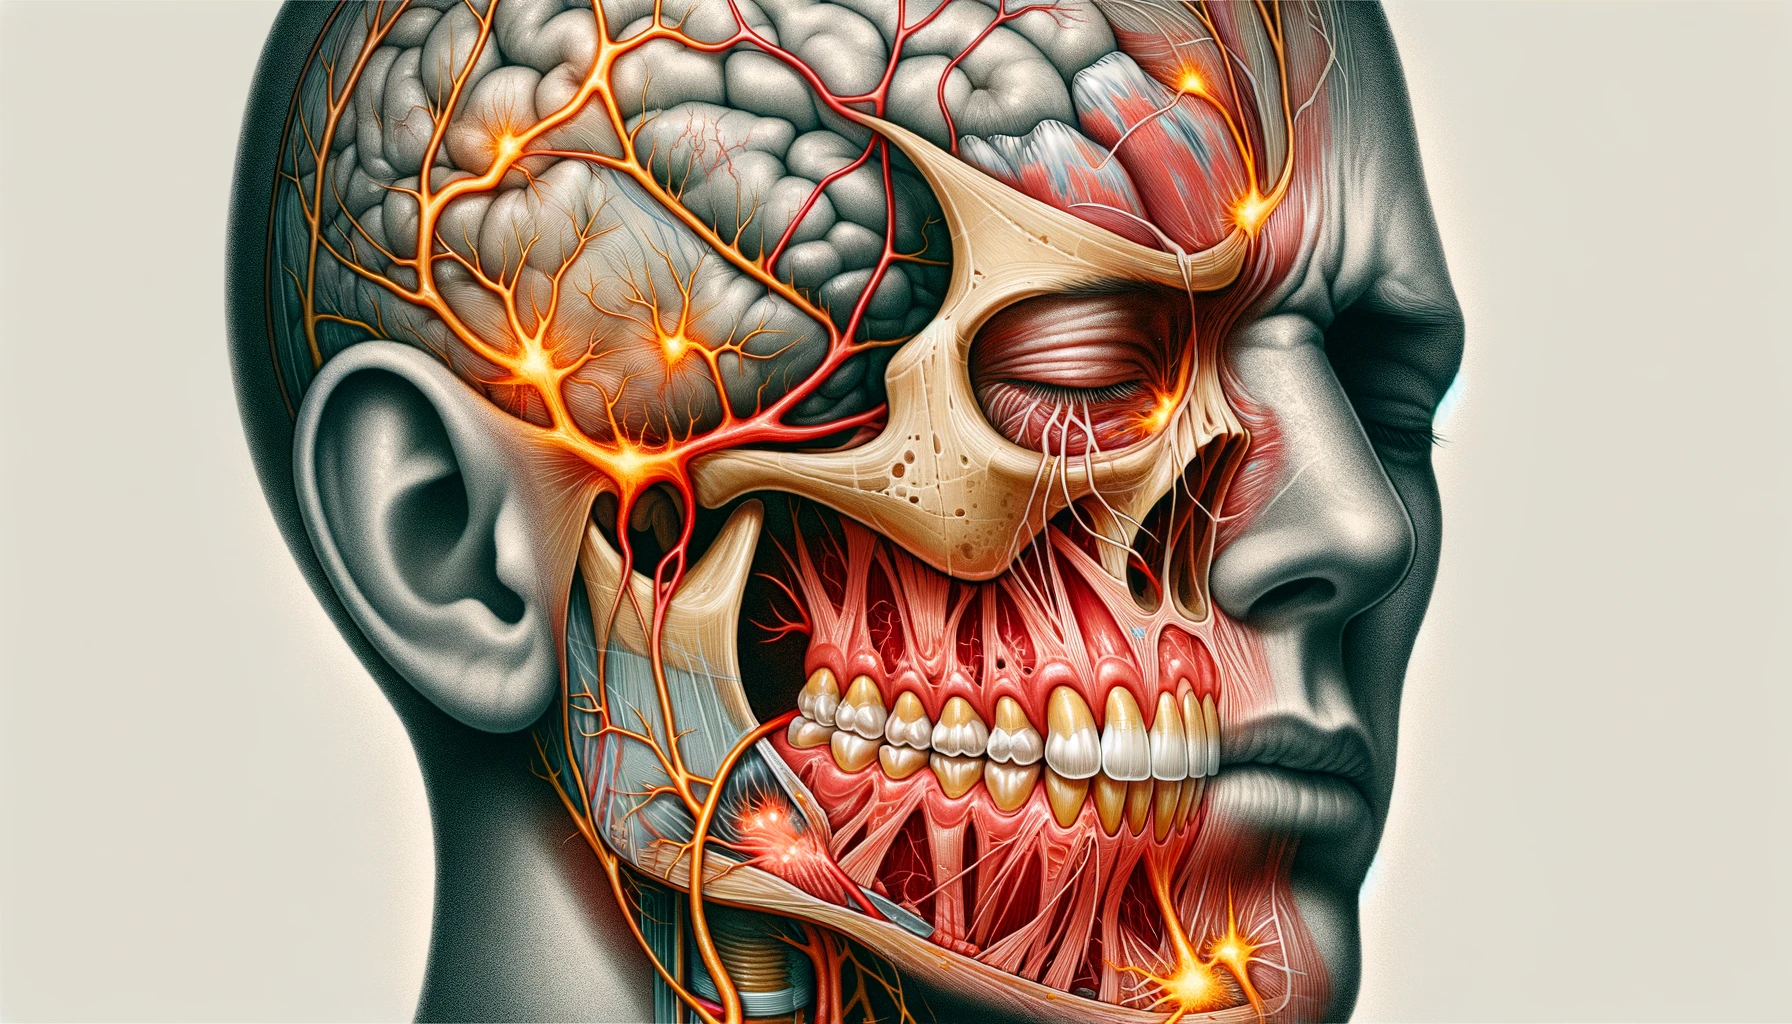 Illustrasjon som viser årsakene bak akutt tannverk og symptomer, med fokus på tenner og nerver